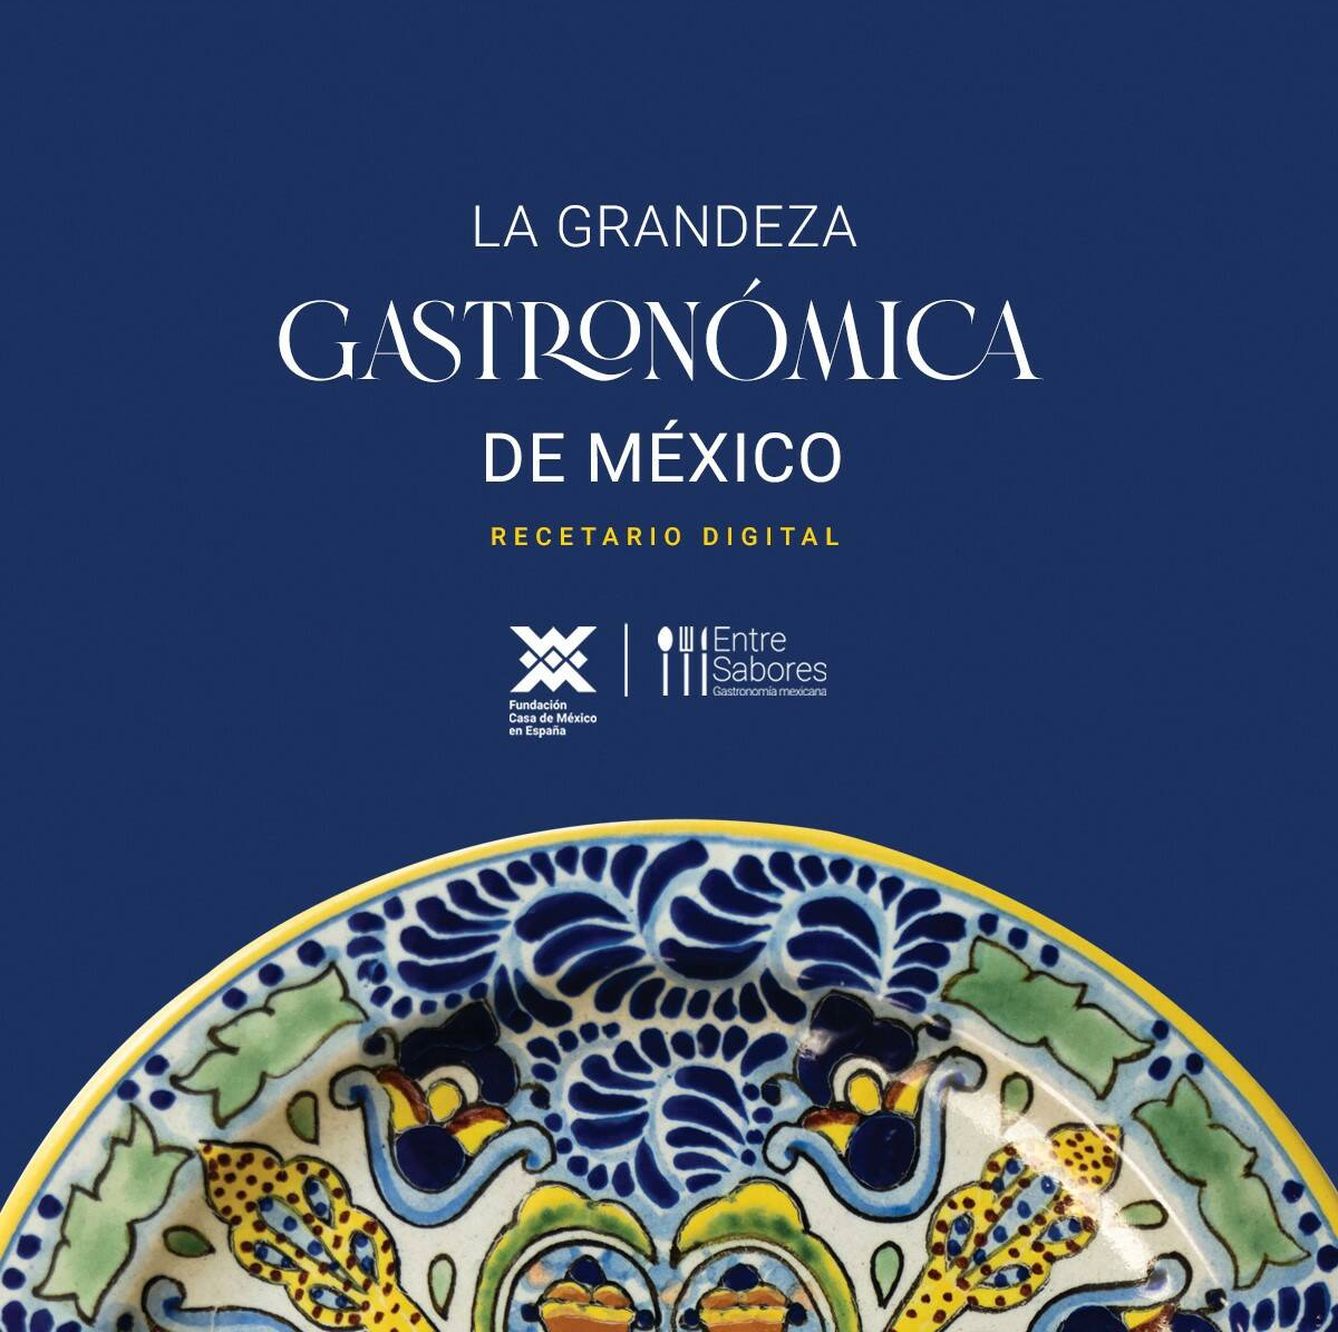 Portada del recetario digital “La grandeza gastronómica de México”. (Fundación Casa de México)